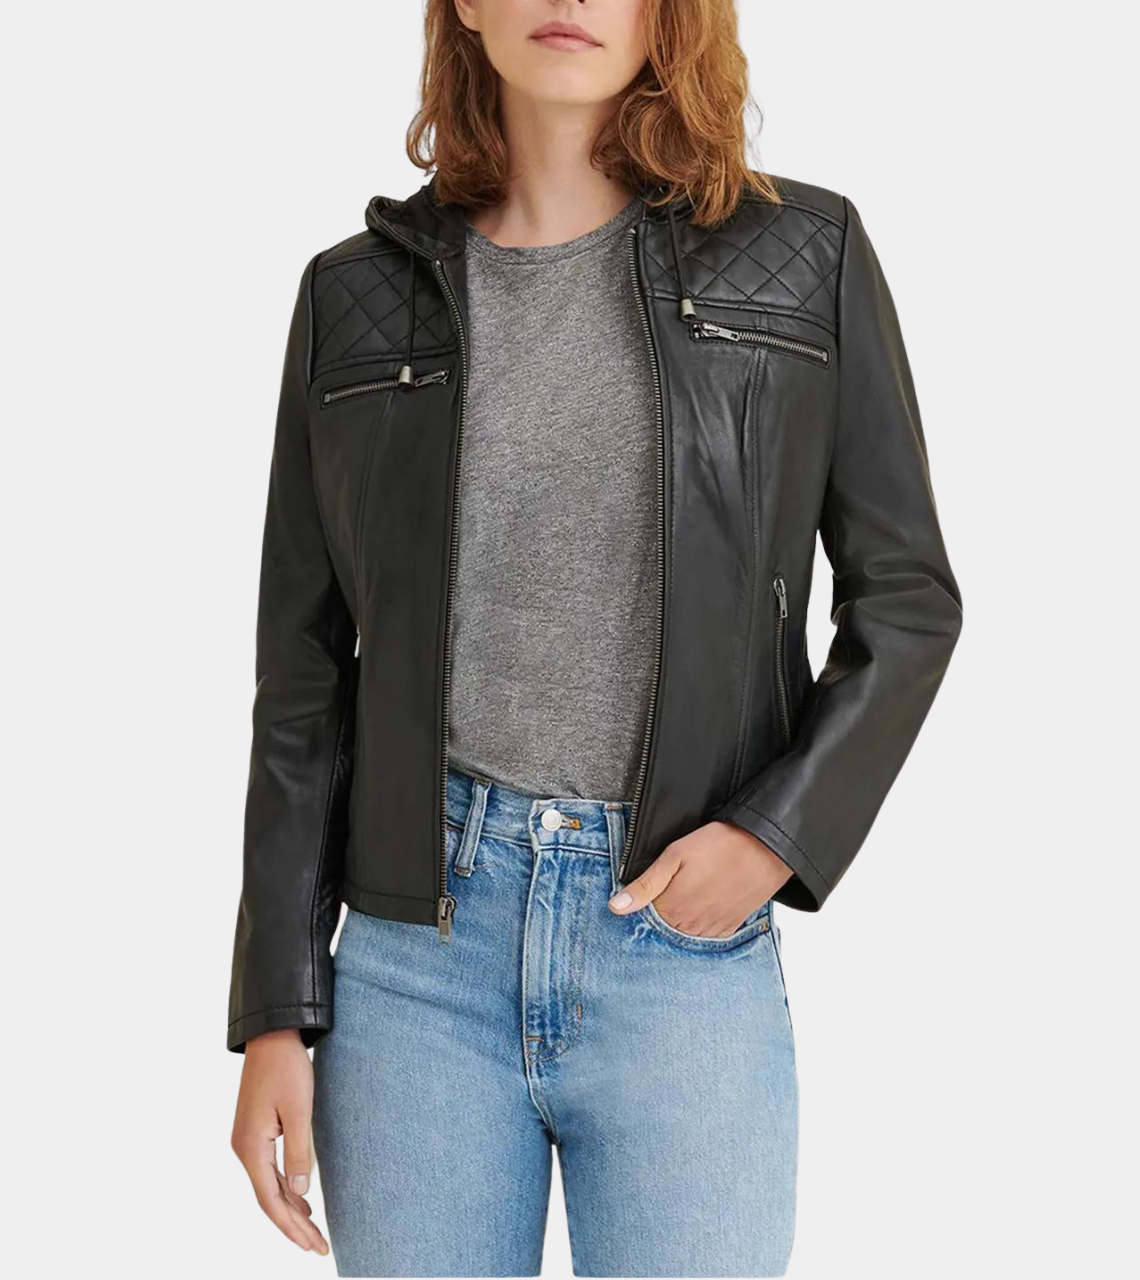 Hooded Black Women’s Biker Leather Jacket